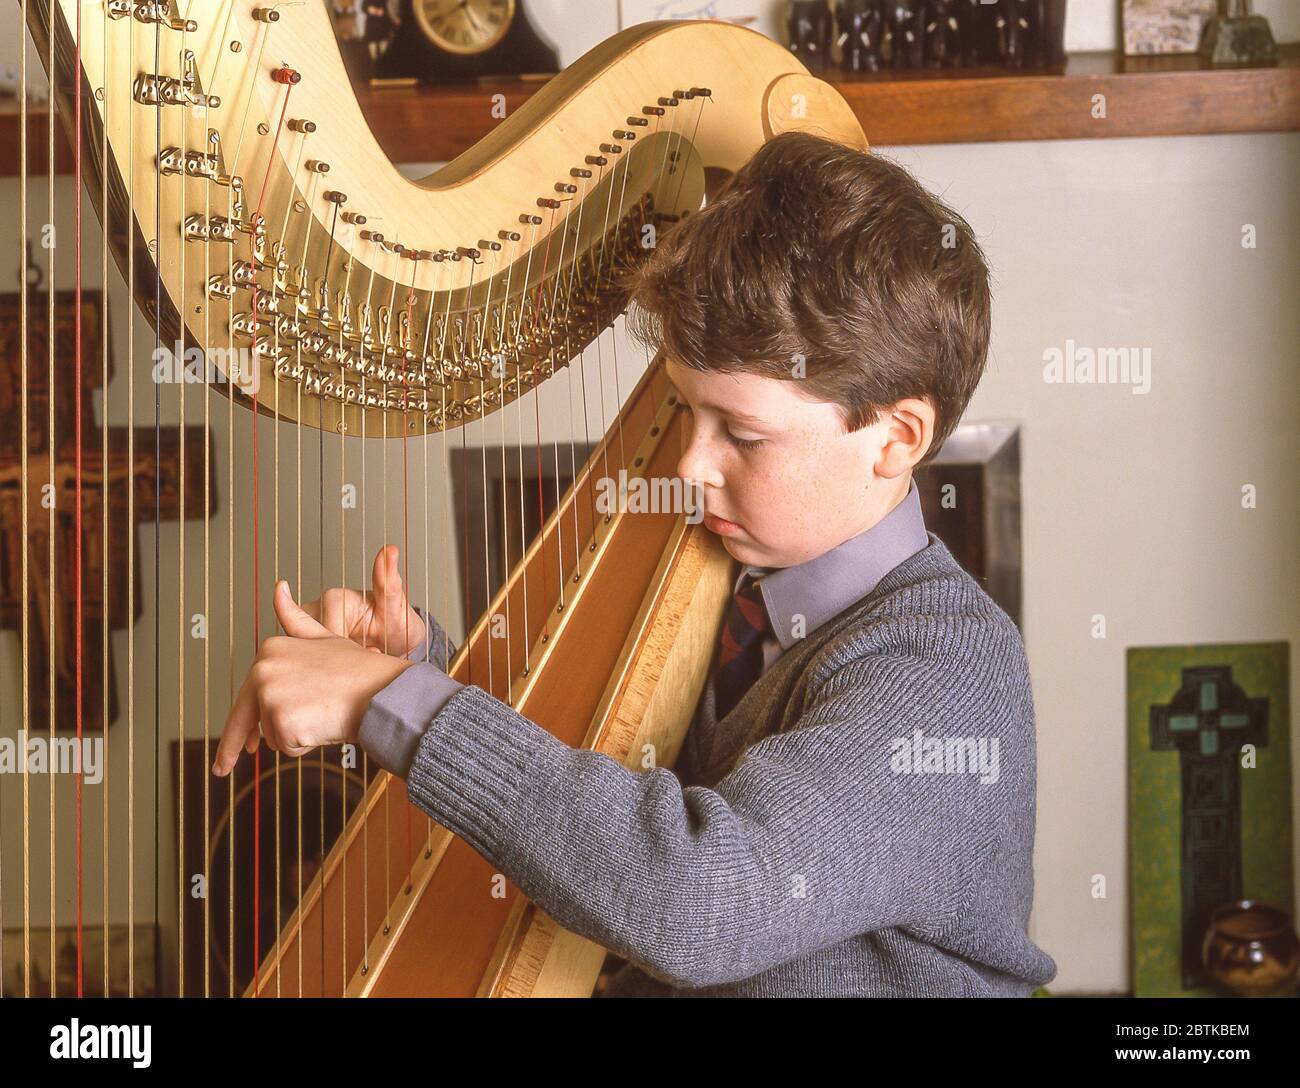 Schuljunge spielt Harfe Musikinstrument in der Schule, Surrey, England, Großbritannien Stockfoto